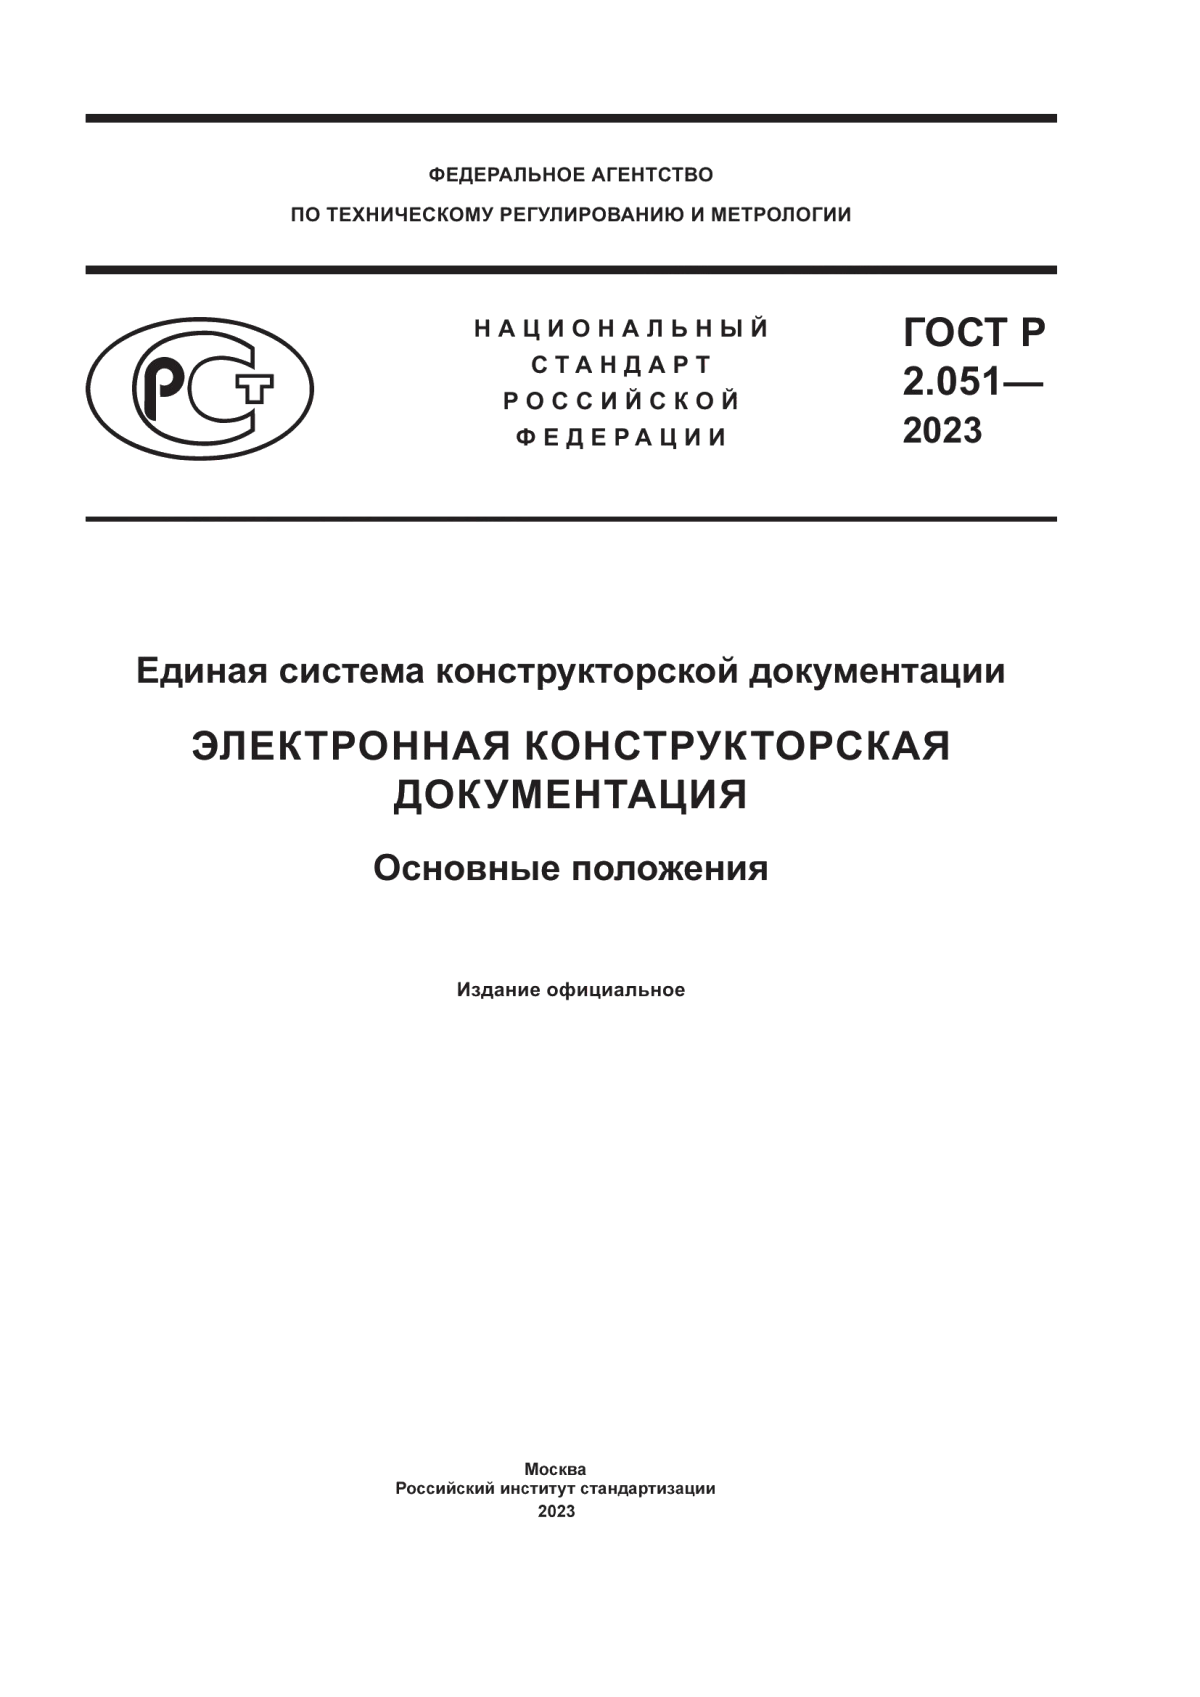 ГОСТ Р 2.051-2023 Единая система конструкторской документации. Электронная конструкторская документация. Основные положения